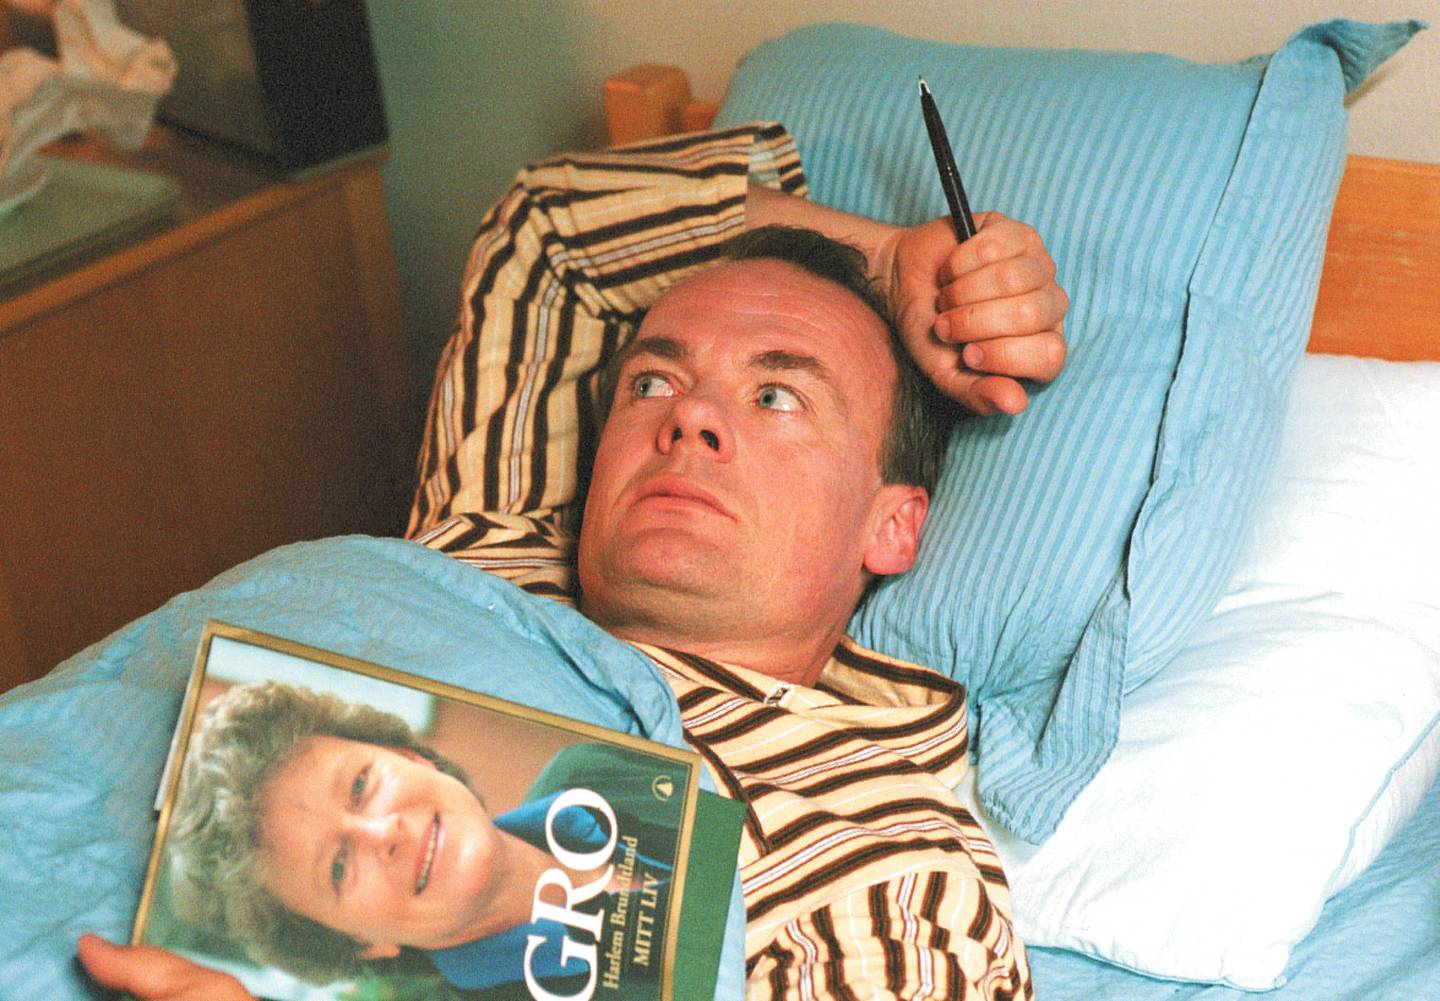 Skjermdump fra filmen Elling. Her har han tatt med seg Gro Harlem Brundtland-boka i senga.